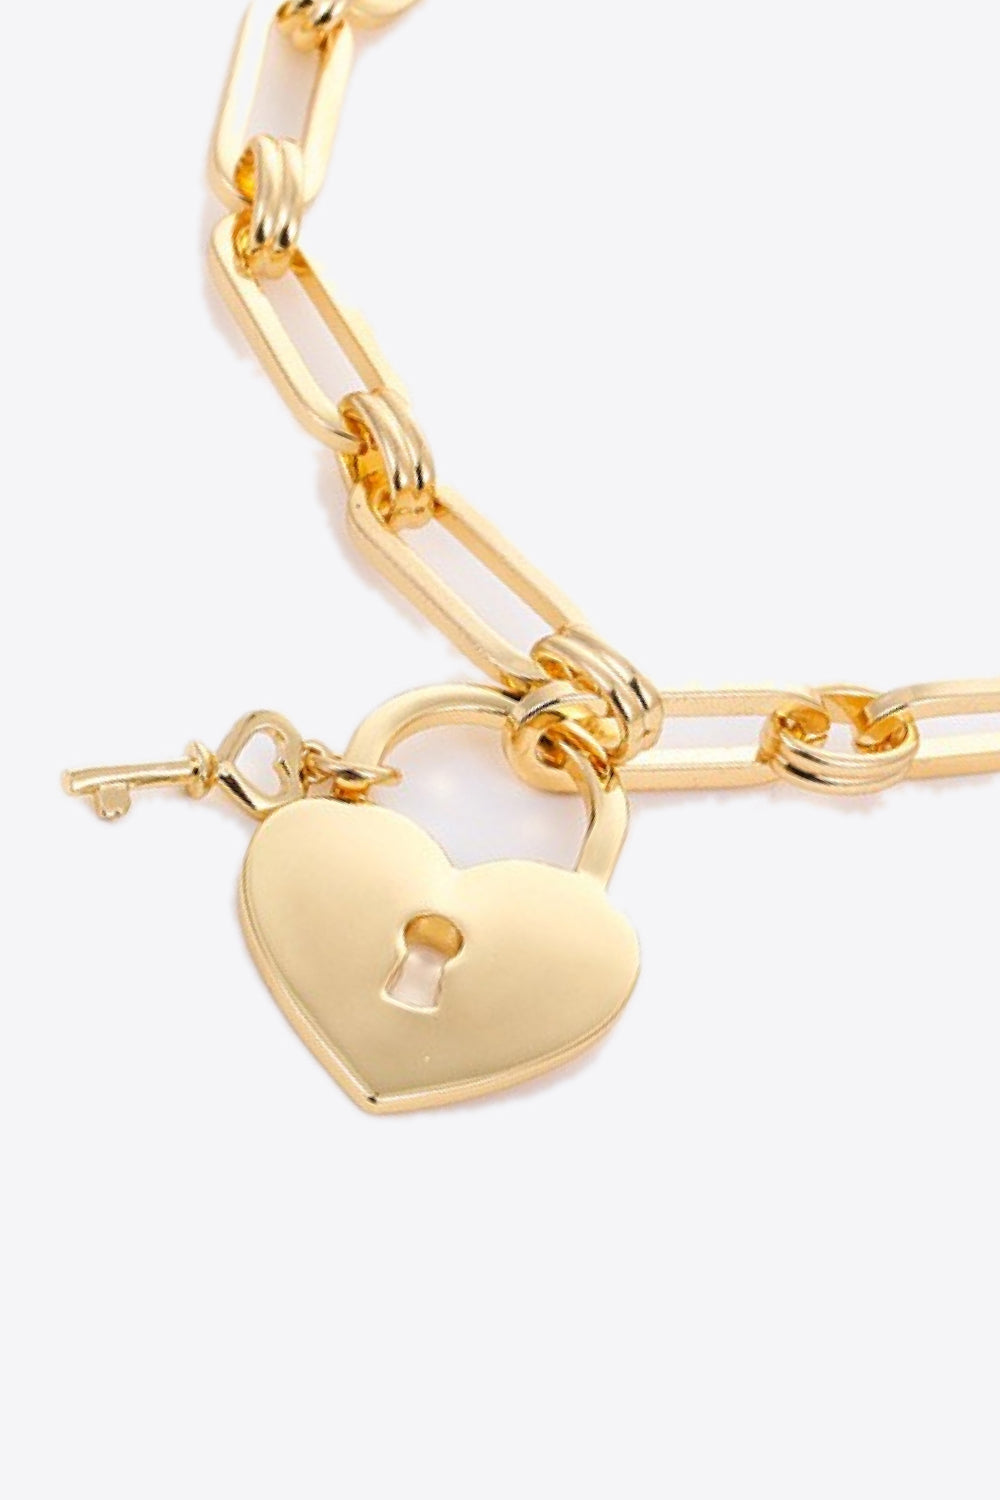 Heart Lock Charm Chain Bracelet - Gold / One Size - Women’s Jewelry - Bracelets - 3 - 2024